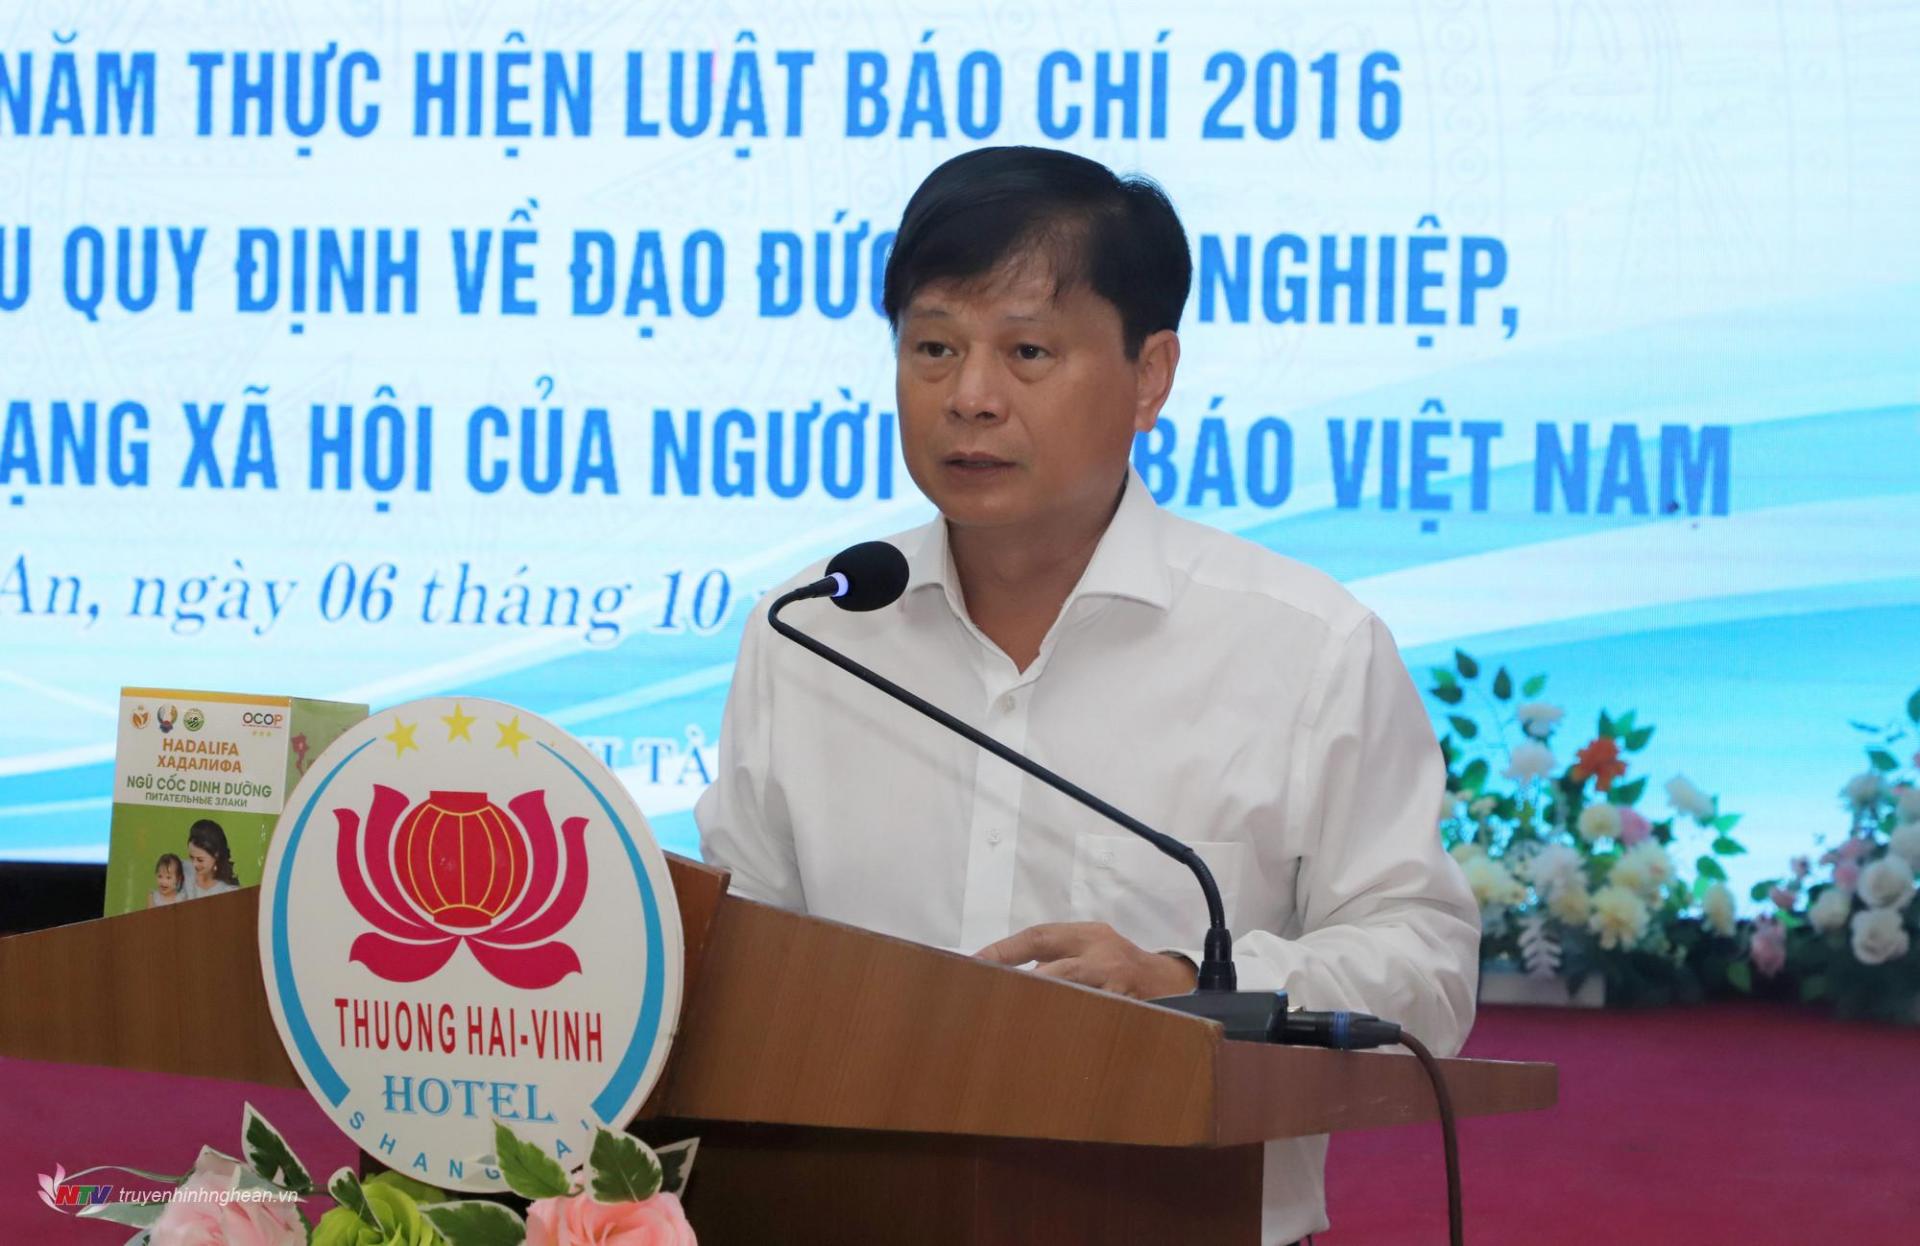 Đồng chí Trần Trọng Dũng, Phó Chủ tịch Hội Nhà báo Việt Nam phát biểu kết luận Hội nghị